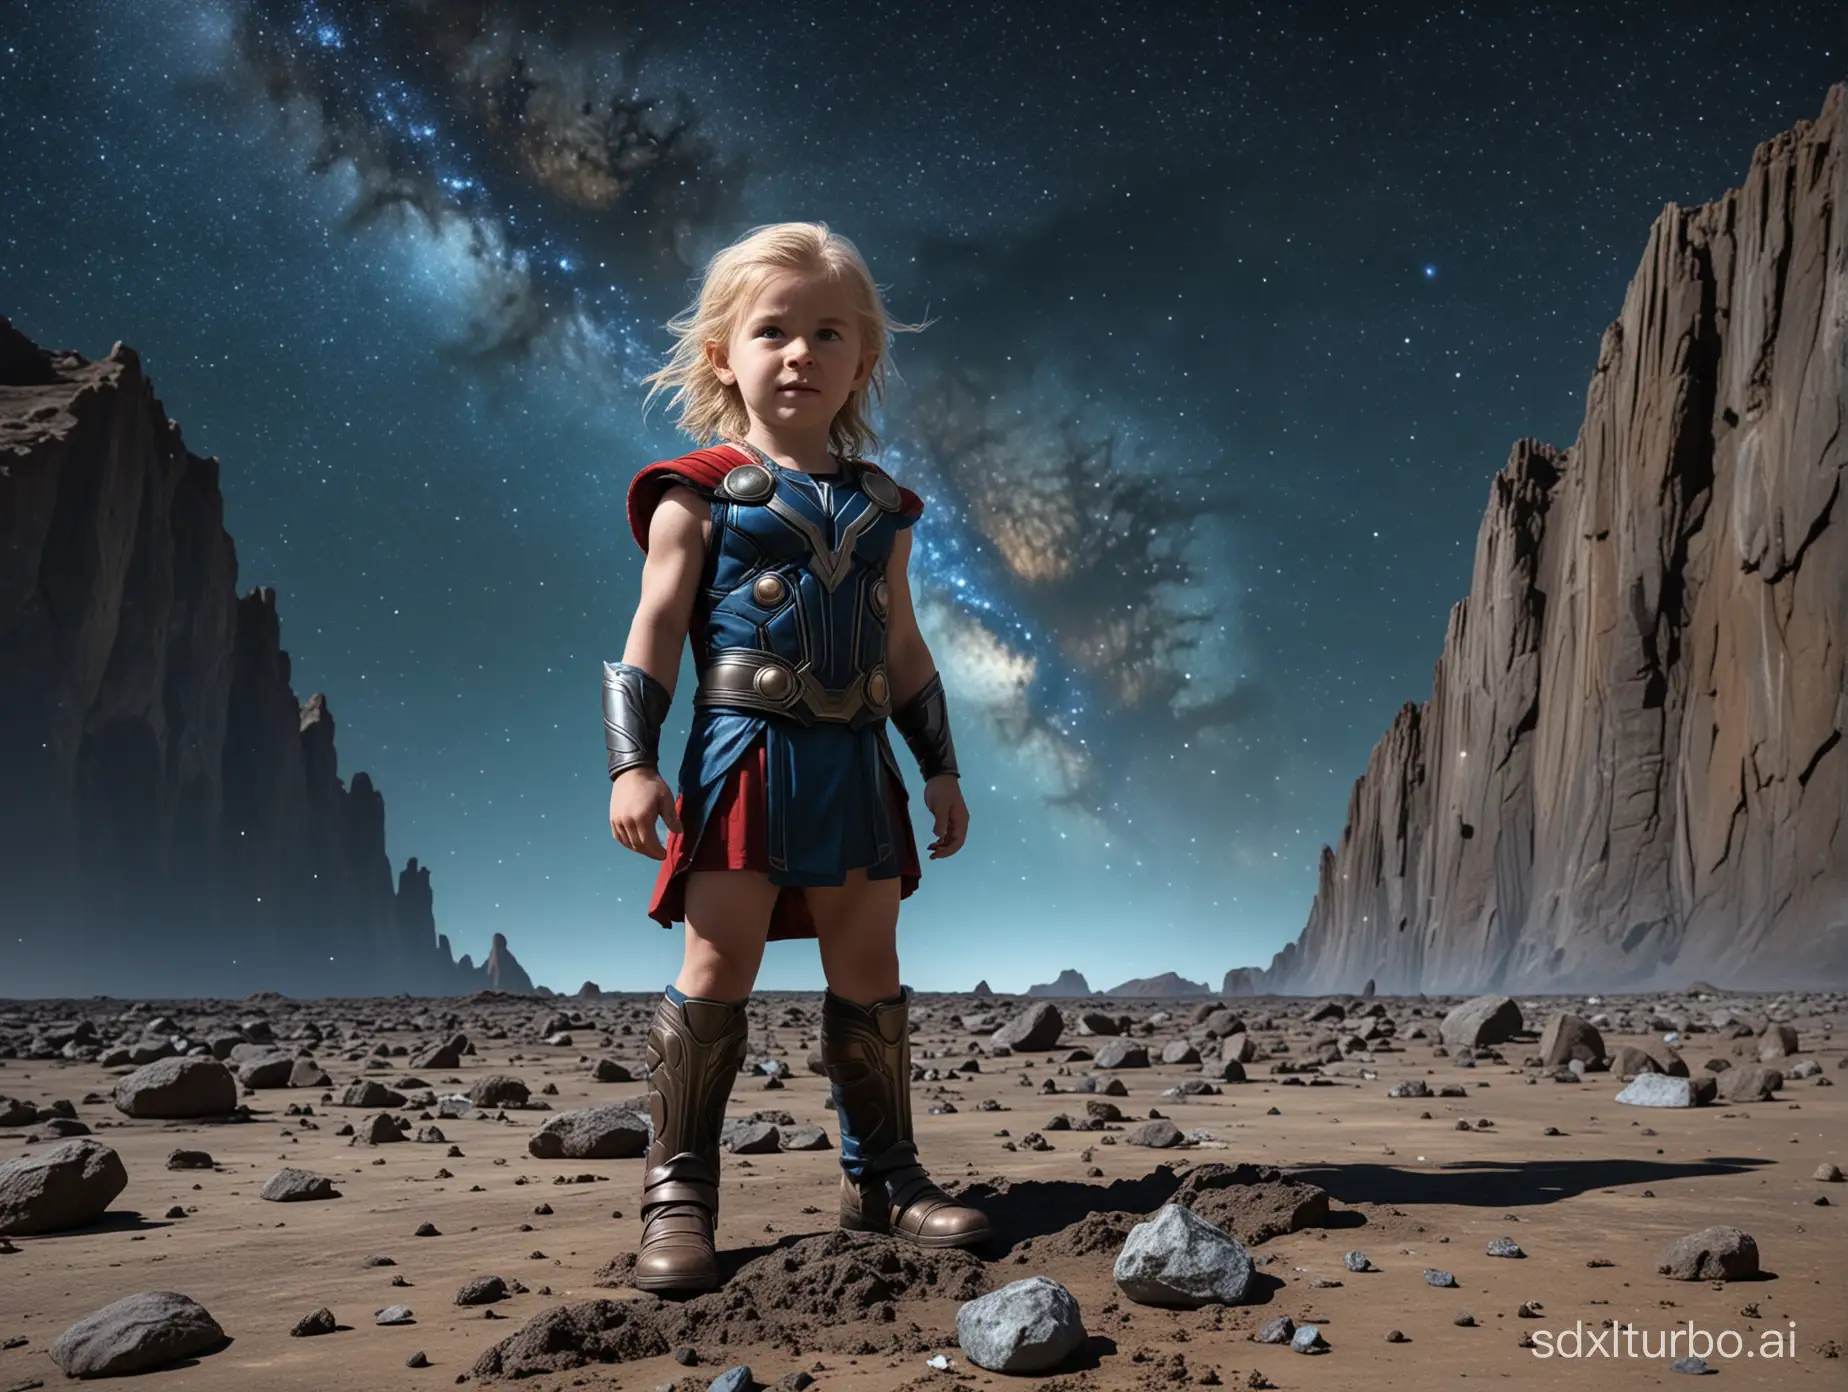 一个儿童，全身，面对镜头，能看见五官及头发，变成雷神托尔站在月球陨石表面，背后有蓝色地球，银河星系若影若现，偏暗